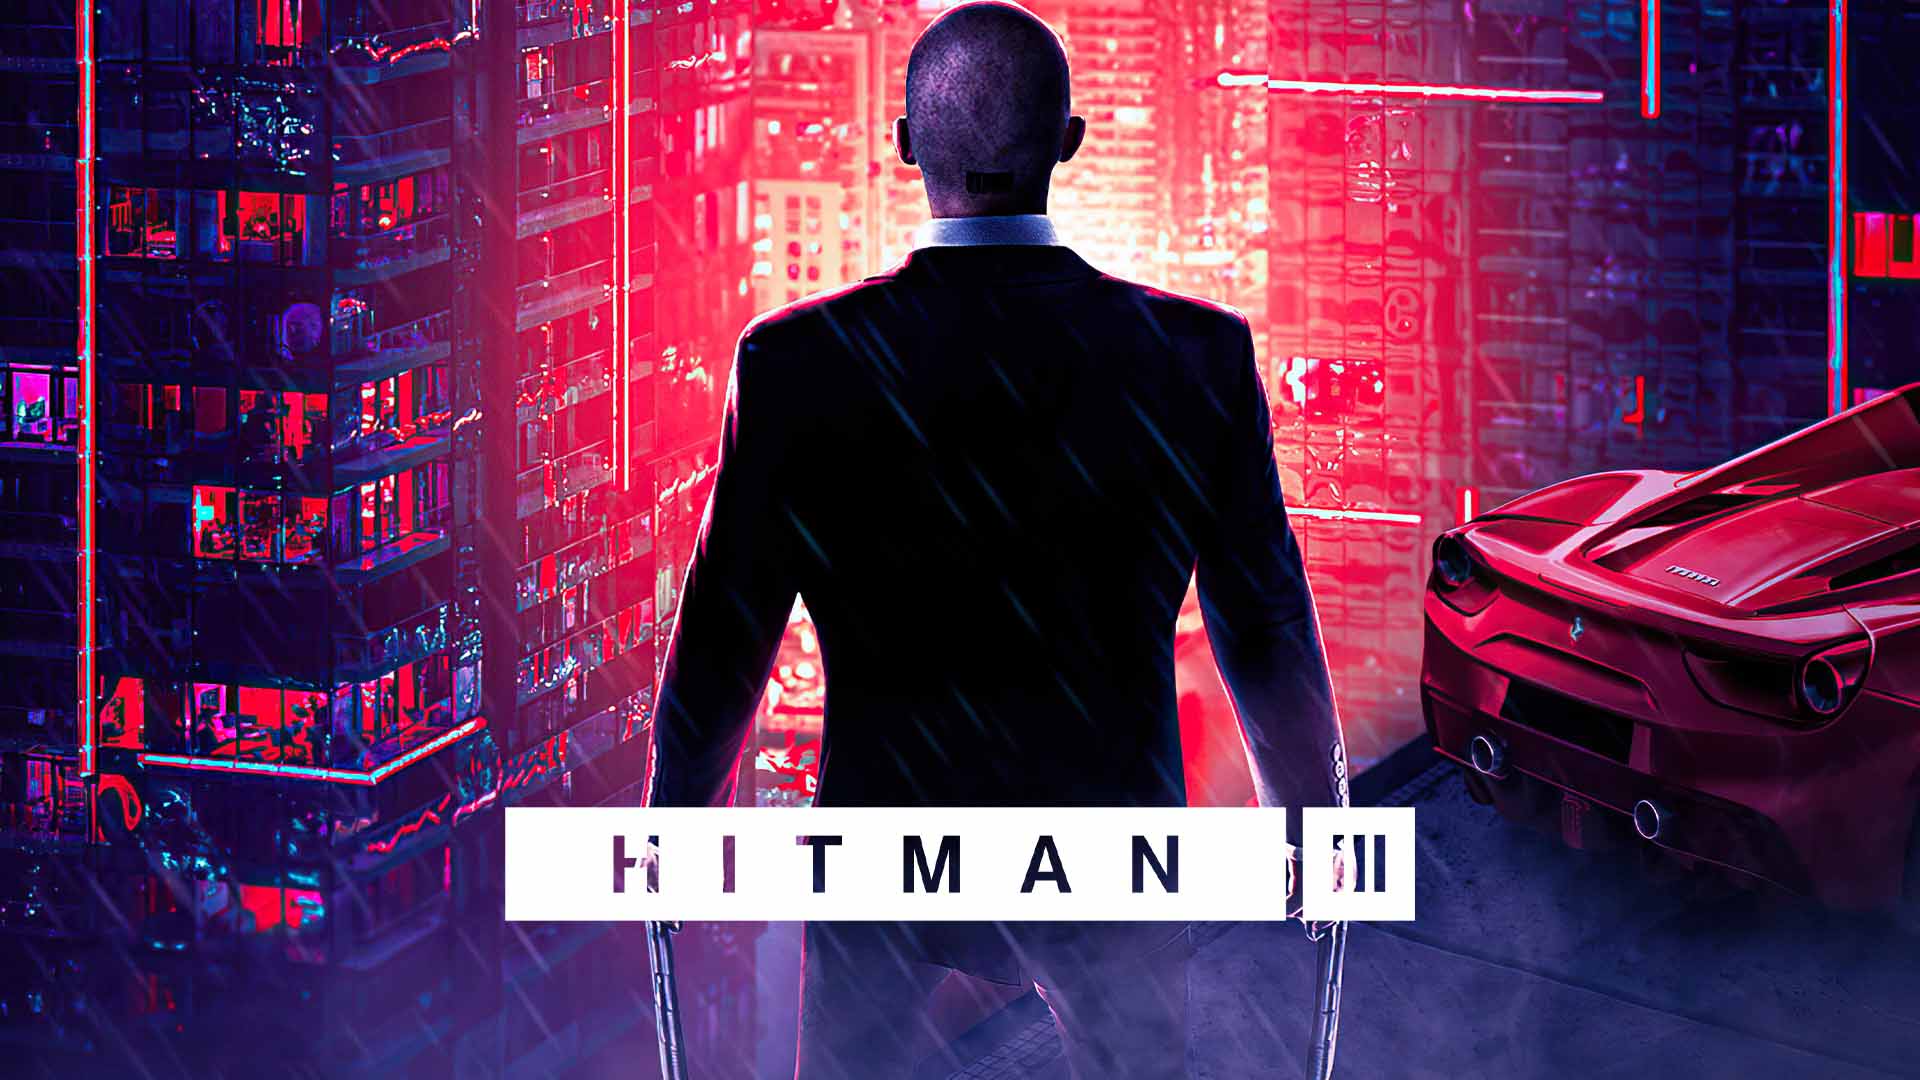 بازی Hitman 3 در صدر دانلودهای فروشگاه پلی استیشن